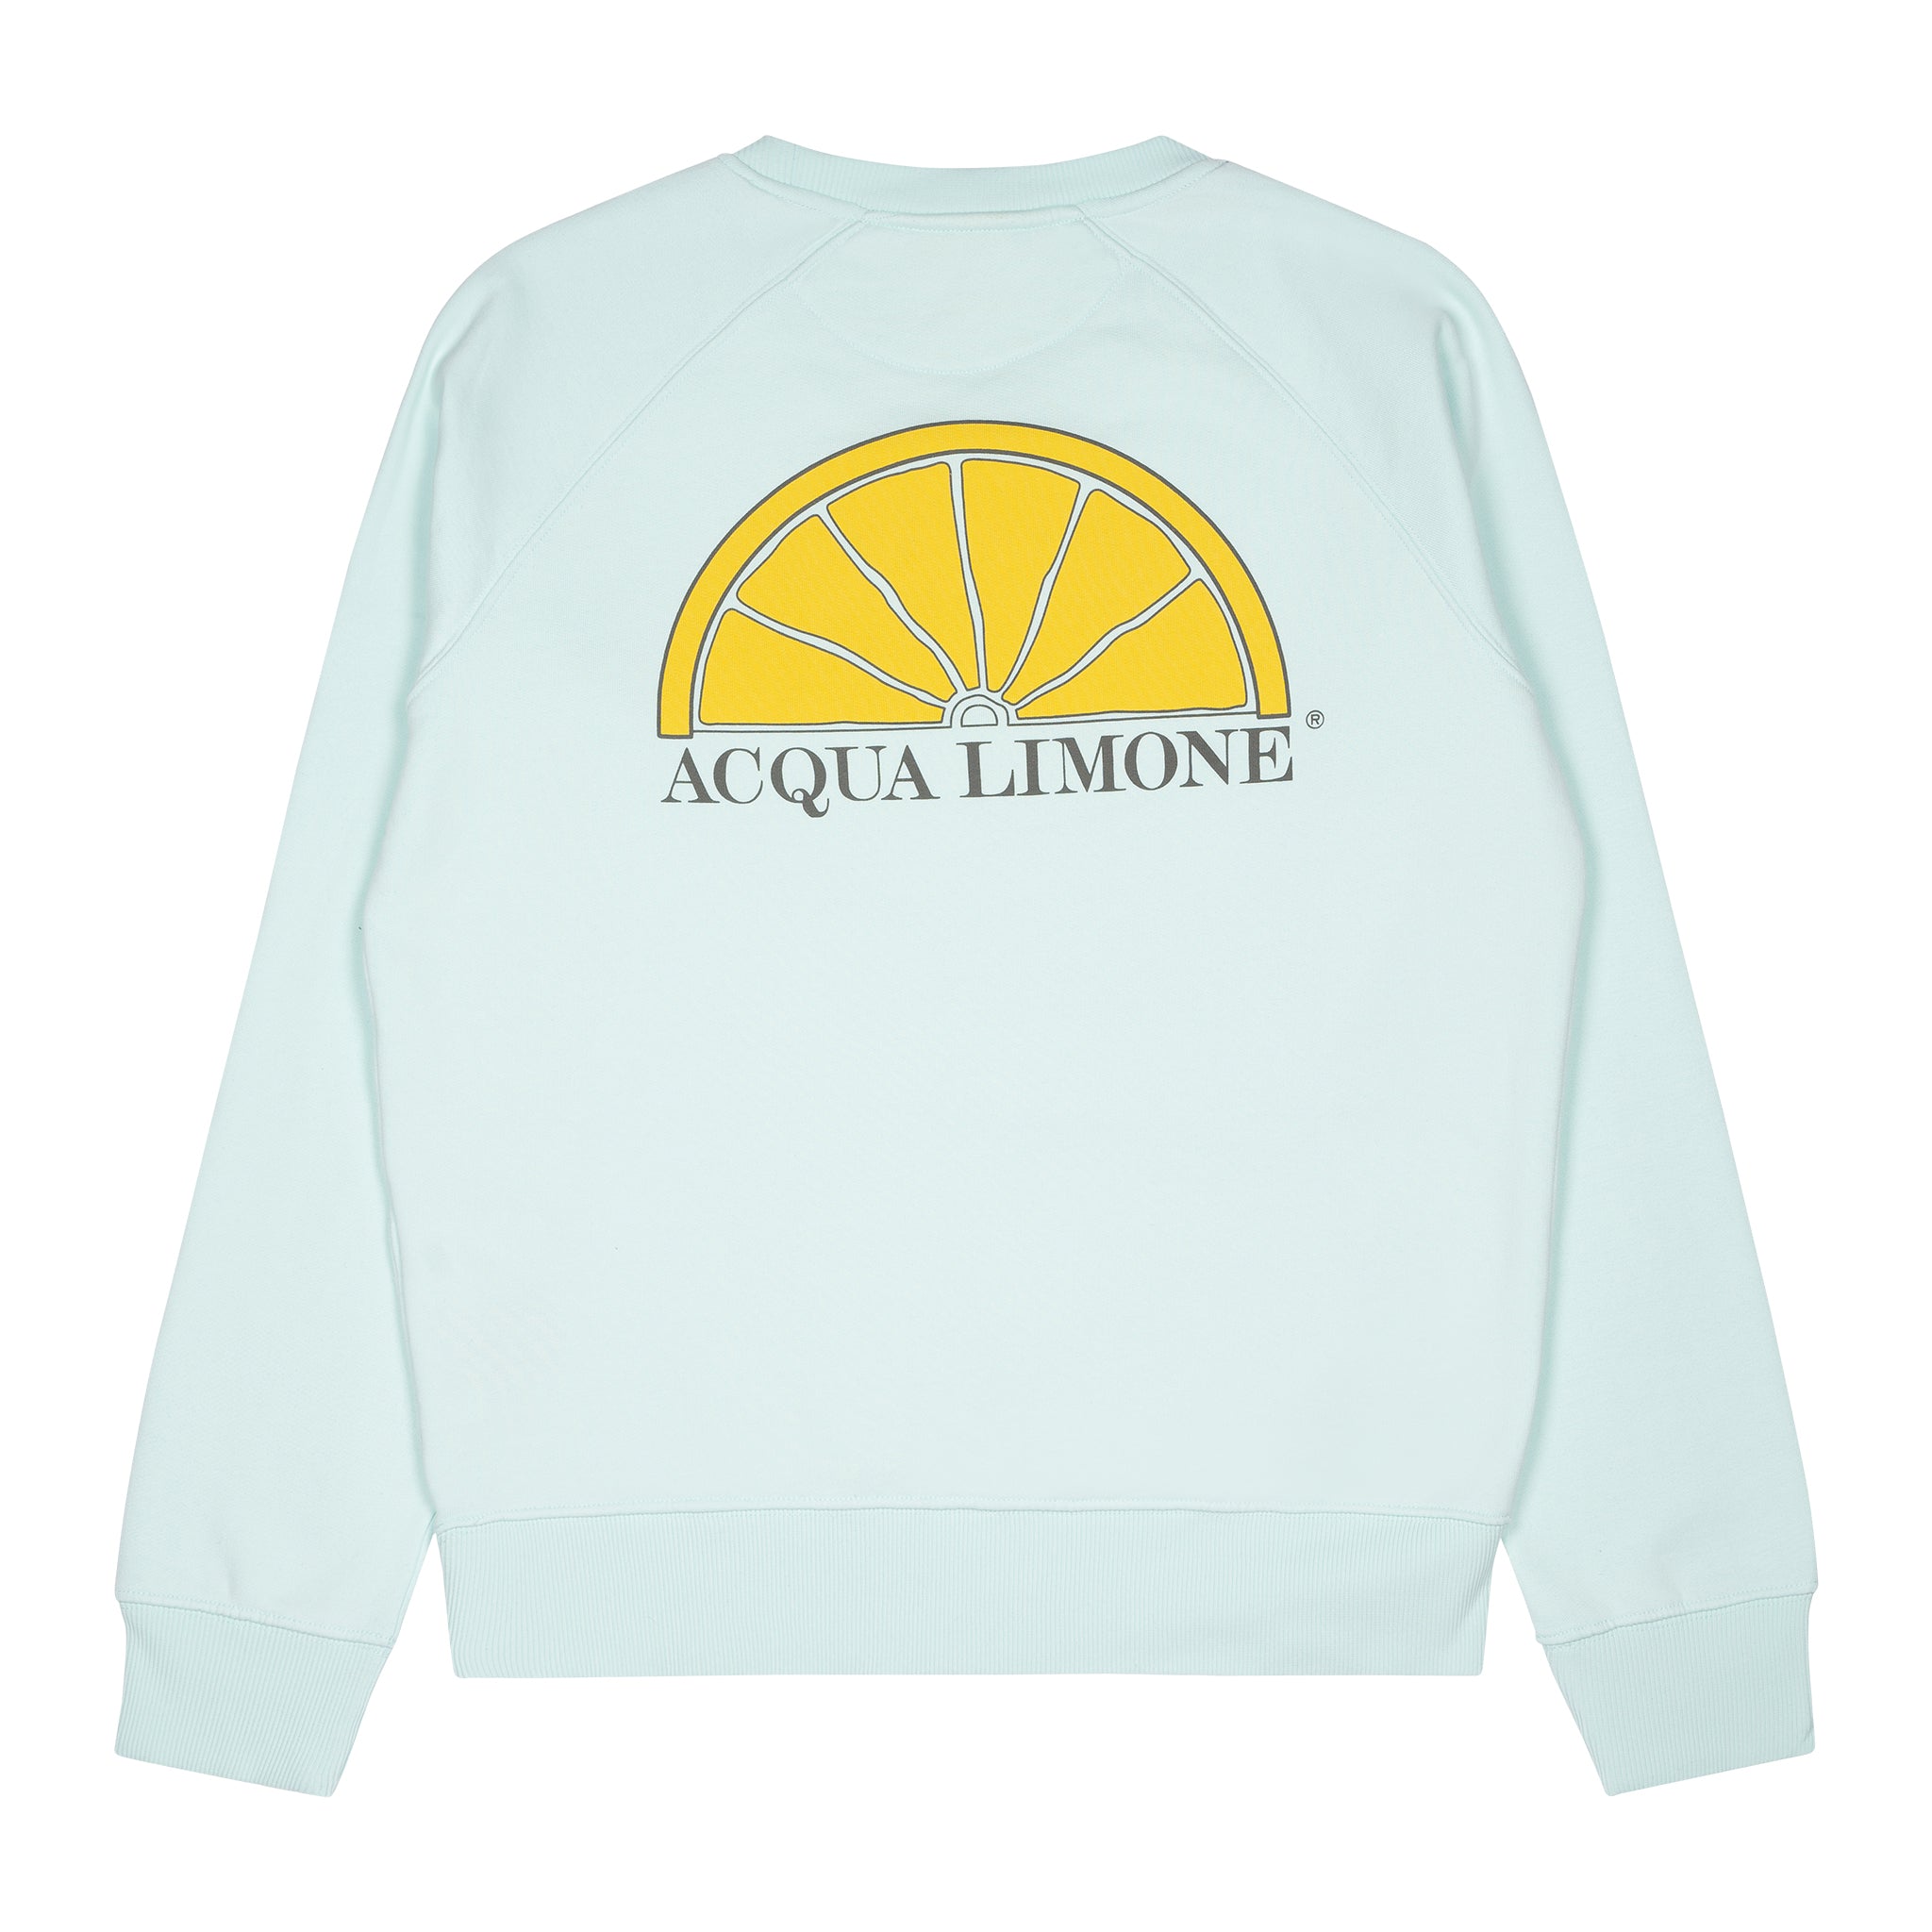 College Classic - Aqua - 101 rib - Acqua Limone